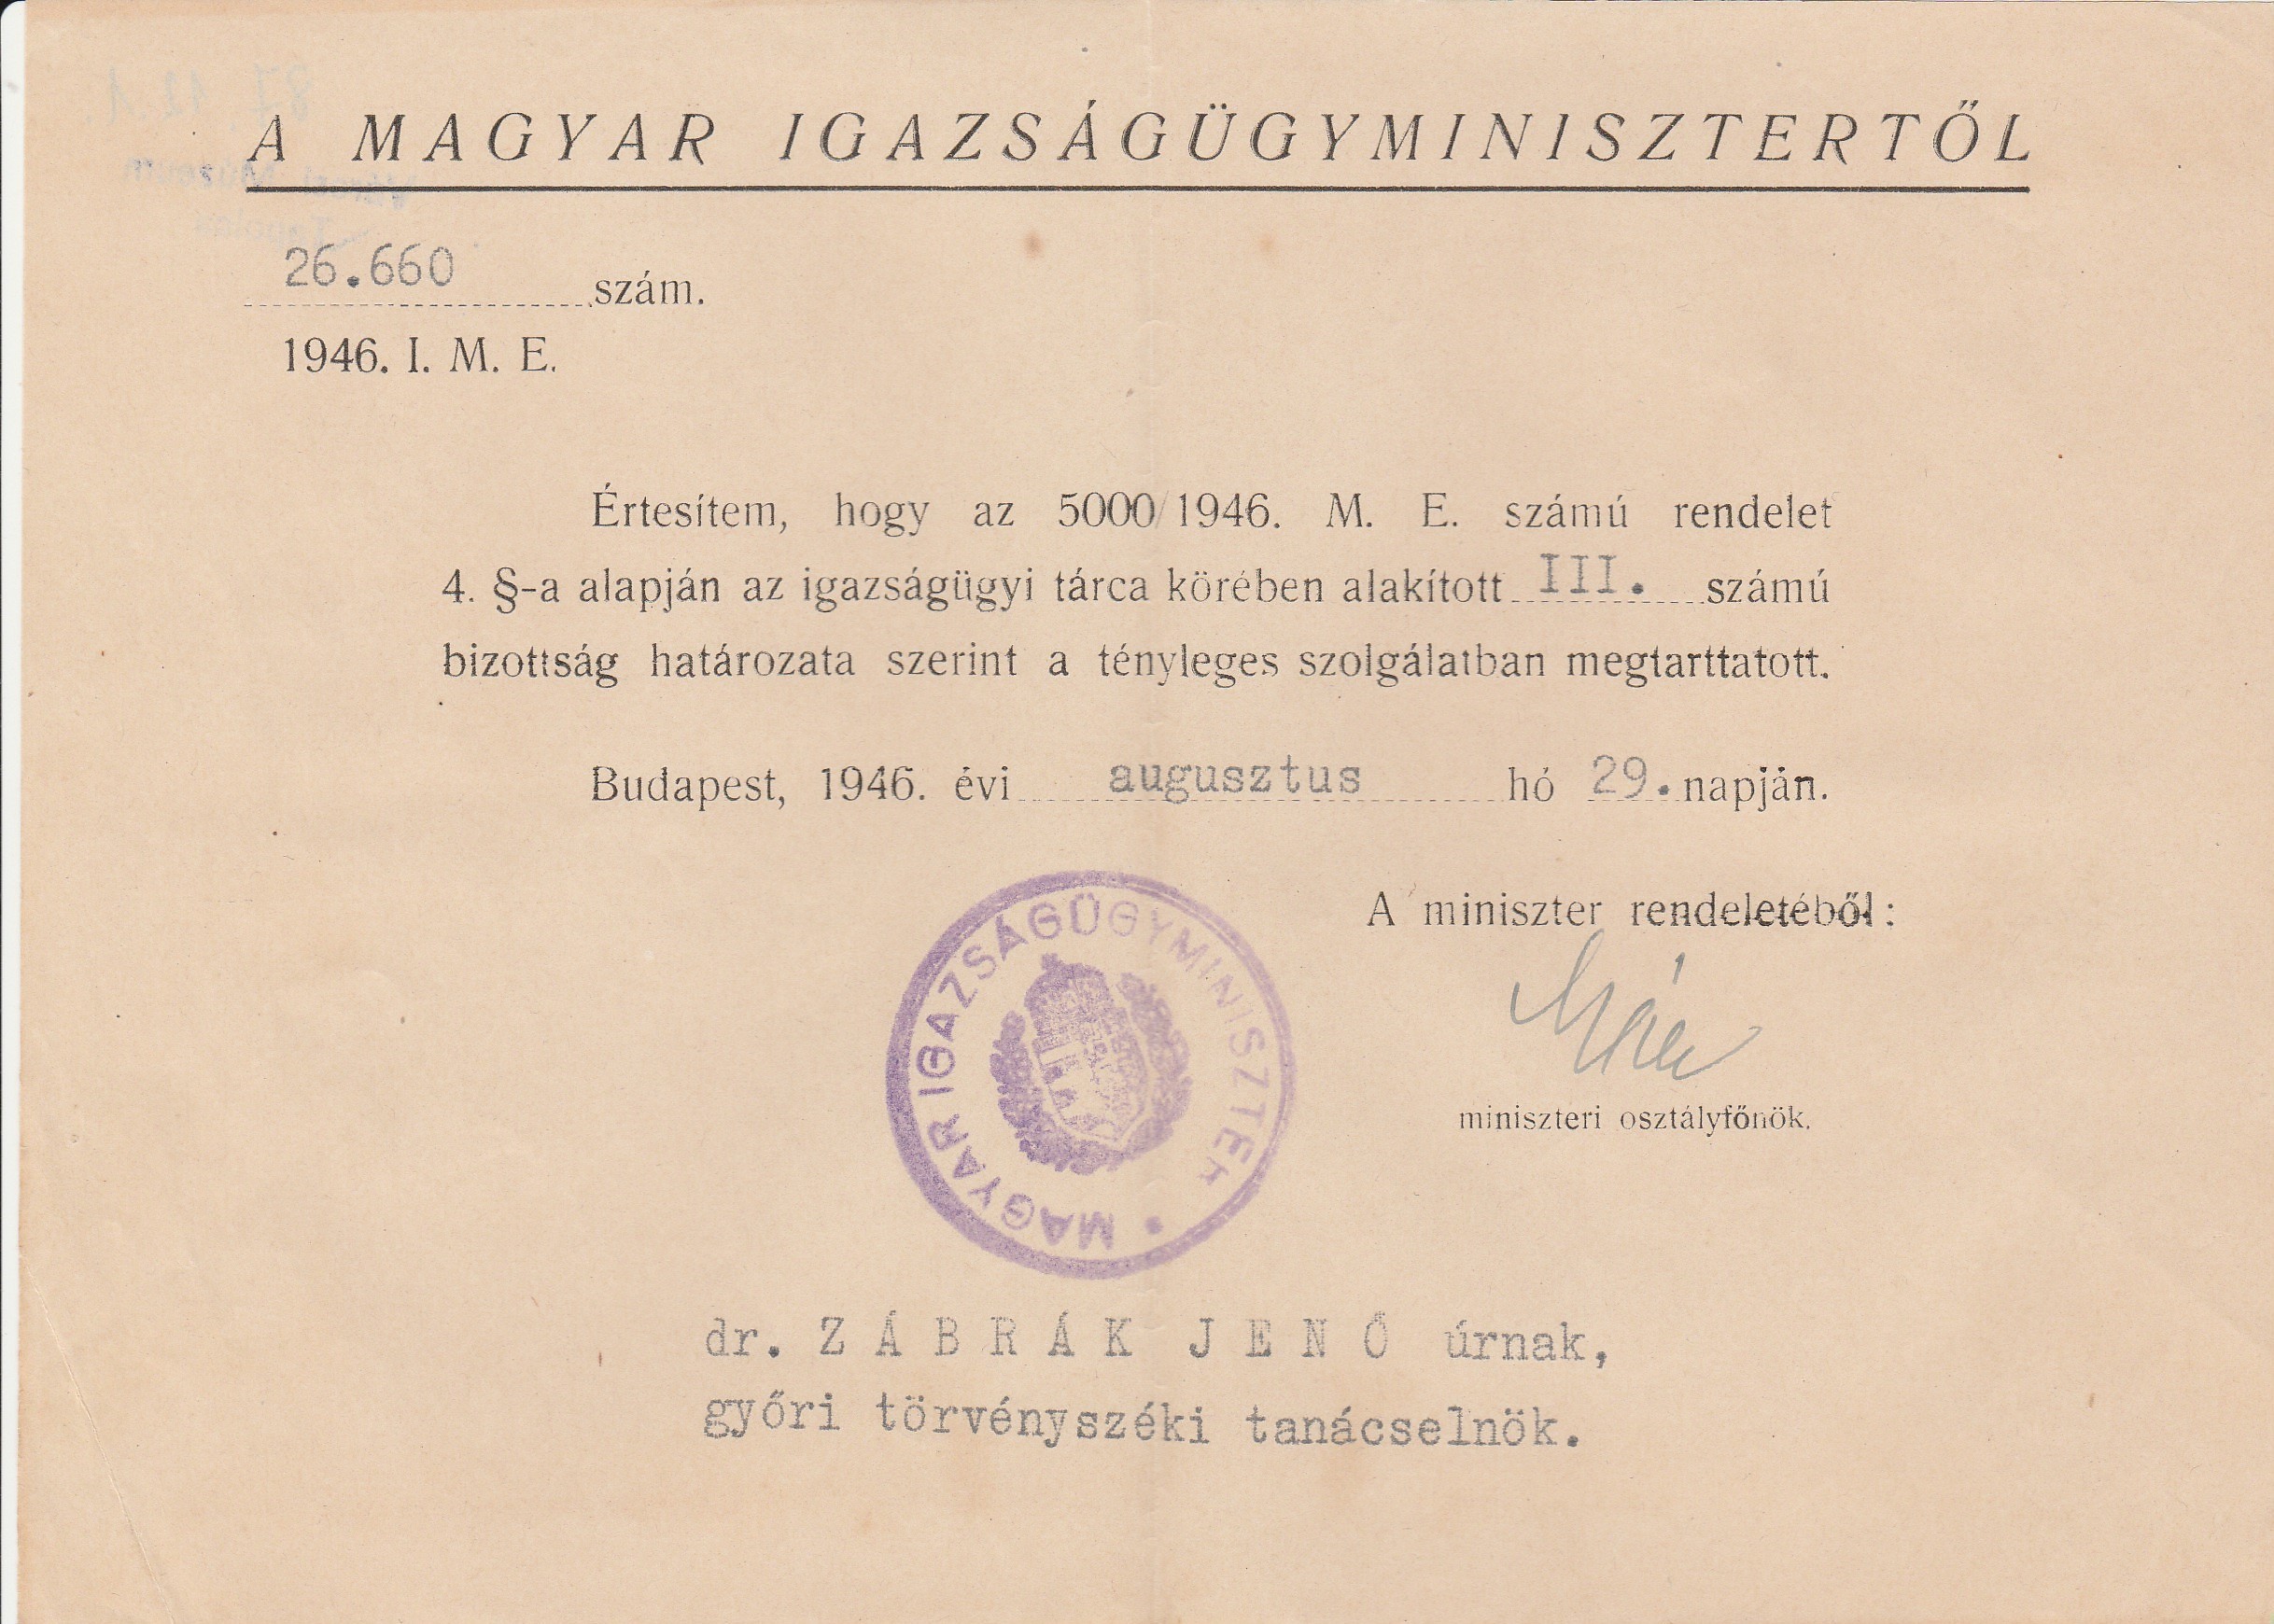 Igazságügyminiszteri értesítés szolgálatban való megtartásról 1946 (Tapolcai Városi Múzeum CC BY-NC-SA)